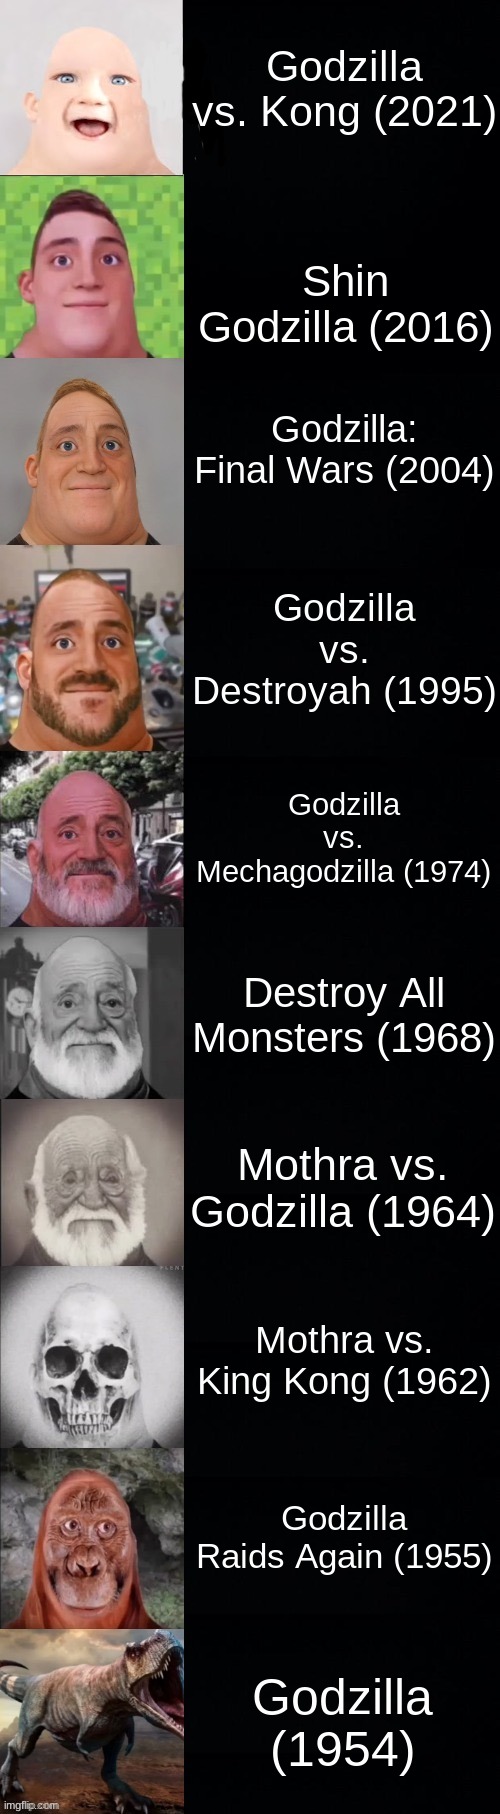 Your first Godzilla movie |  Godzilla vs. Kong (2021); Shin Godzilla (2016); Godzilla: Final Wars (2004); Godzilla vs. Destroyah (1995); Godzilla vs. Mechagodzilla (1974); Destroy All Monsters (1968); Mothra vs. Godzilla (1964); Mothra vs. King Kong (1962); Godzilla Raids Again (1955); Godzilla (1954) | image tagged in mr incredible becoming old,godzilla,godzilla vs kong,king kong,time,mothra | made w/ Imgflip meme maker